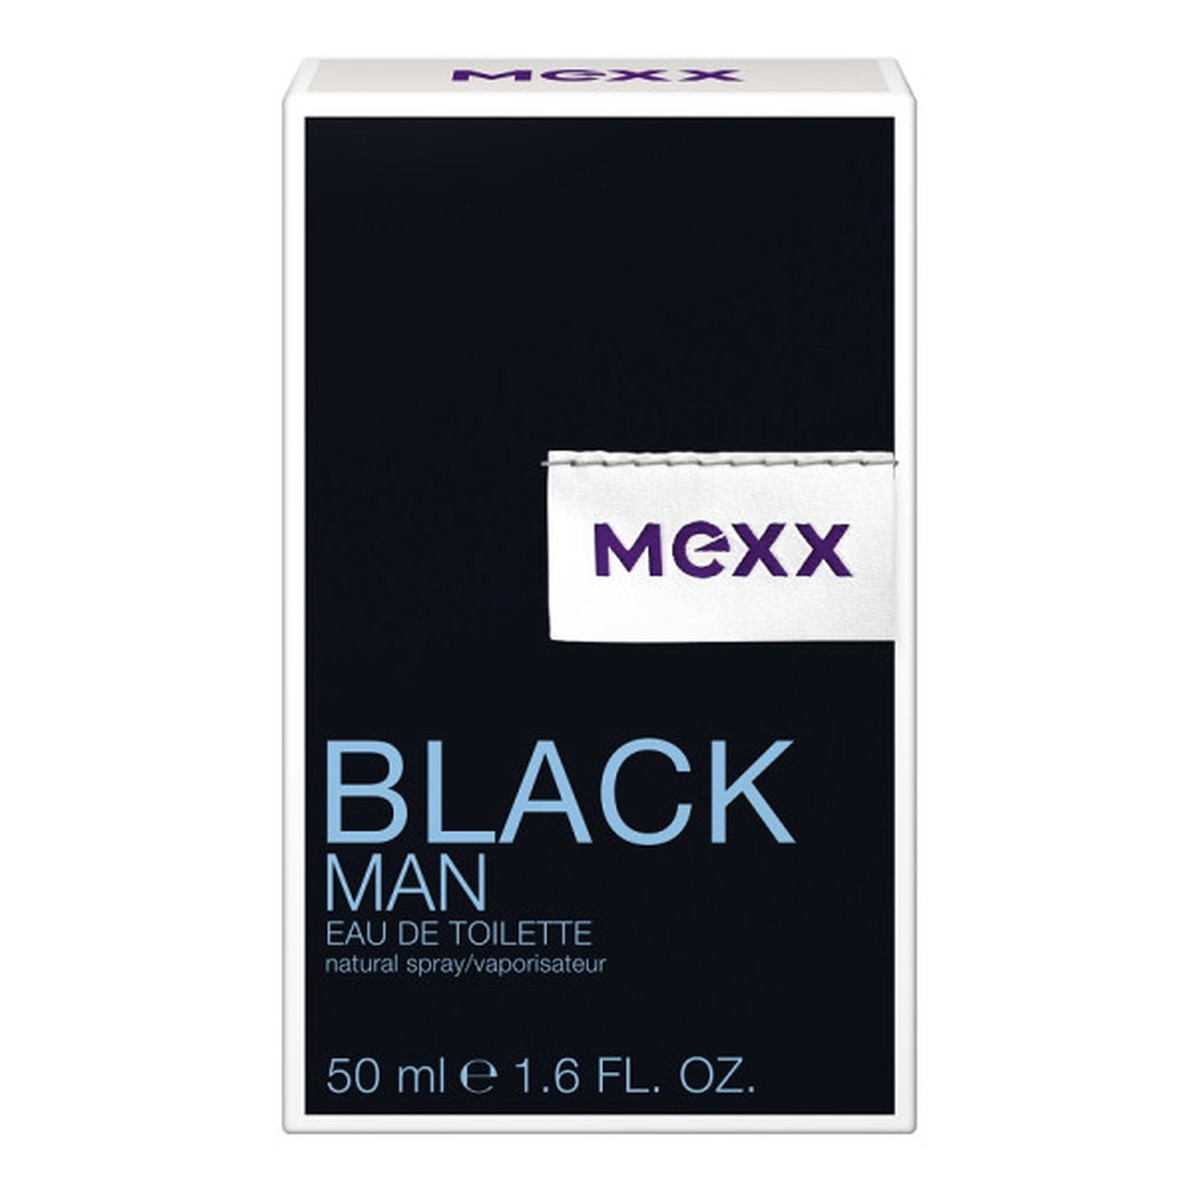 Mexx BLACK MAN WODA TOALETOWA DLA MĘŻCZYZN 50ml